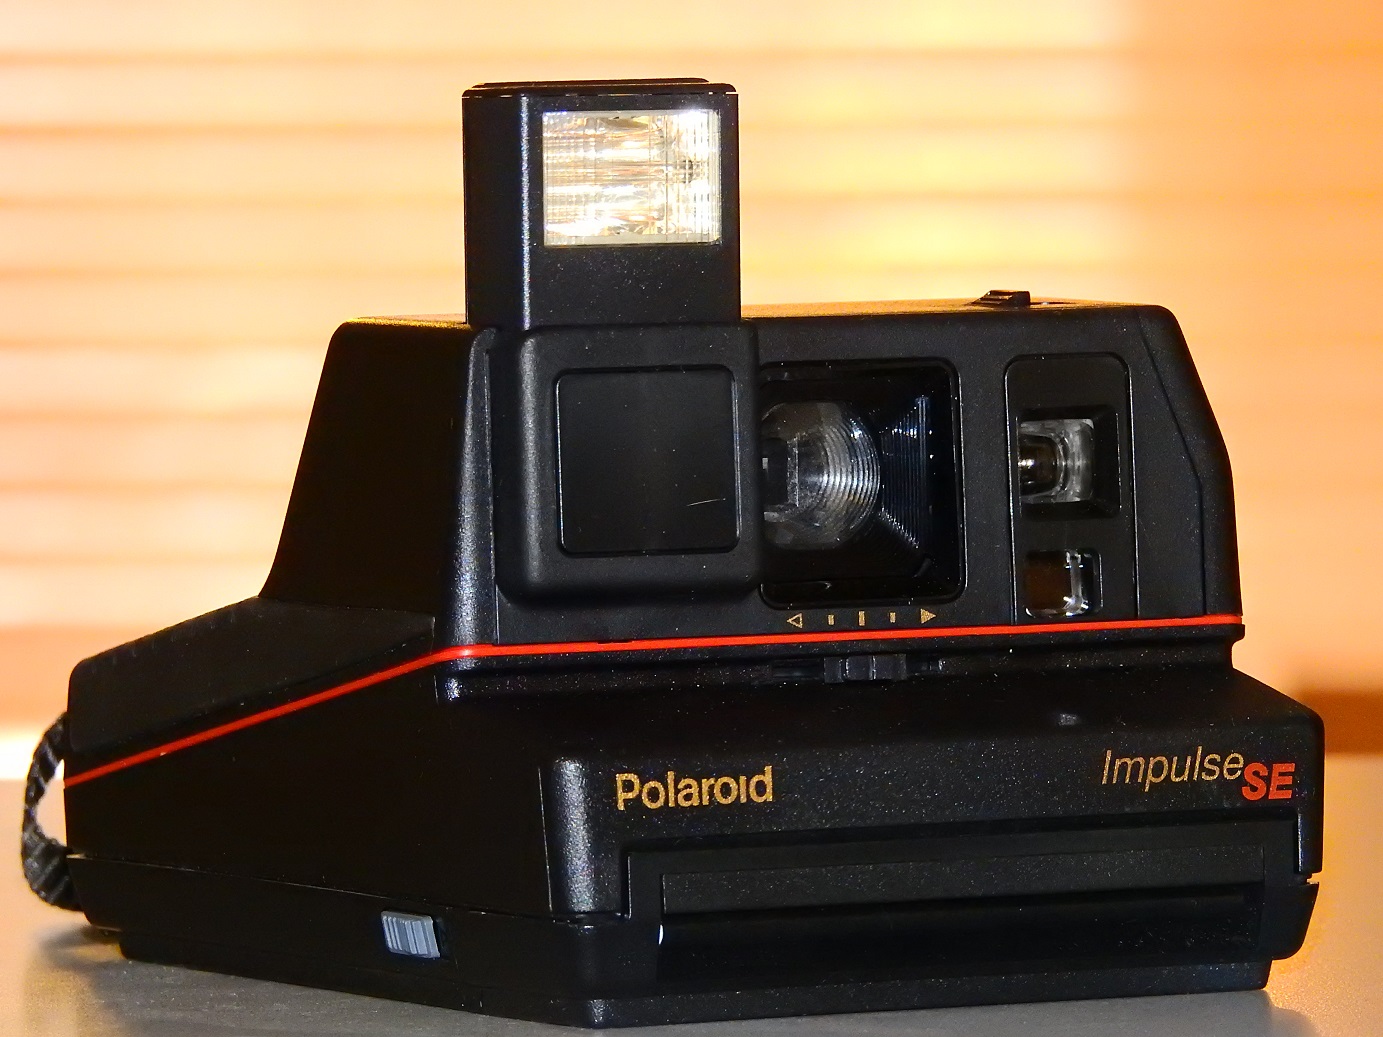 Soapbox Photos Polaroid Impulse Se Camera From 1990s W Manual And